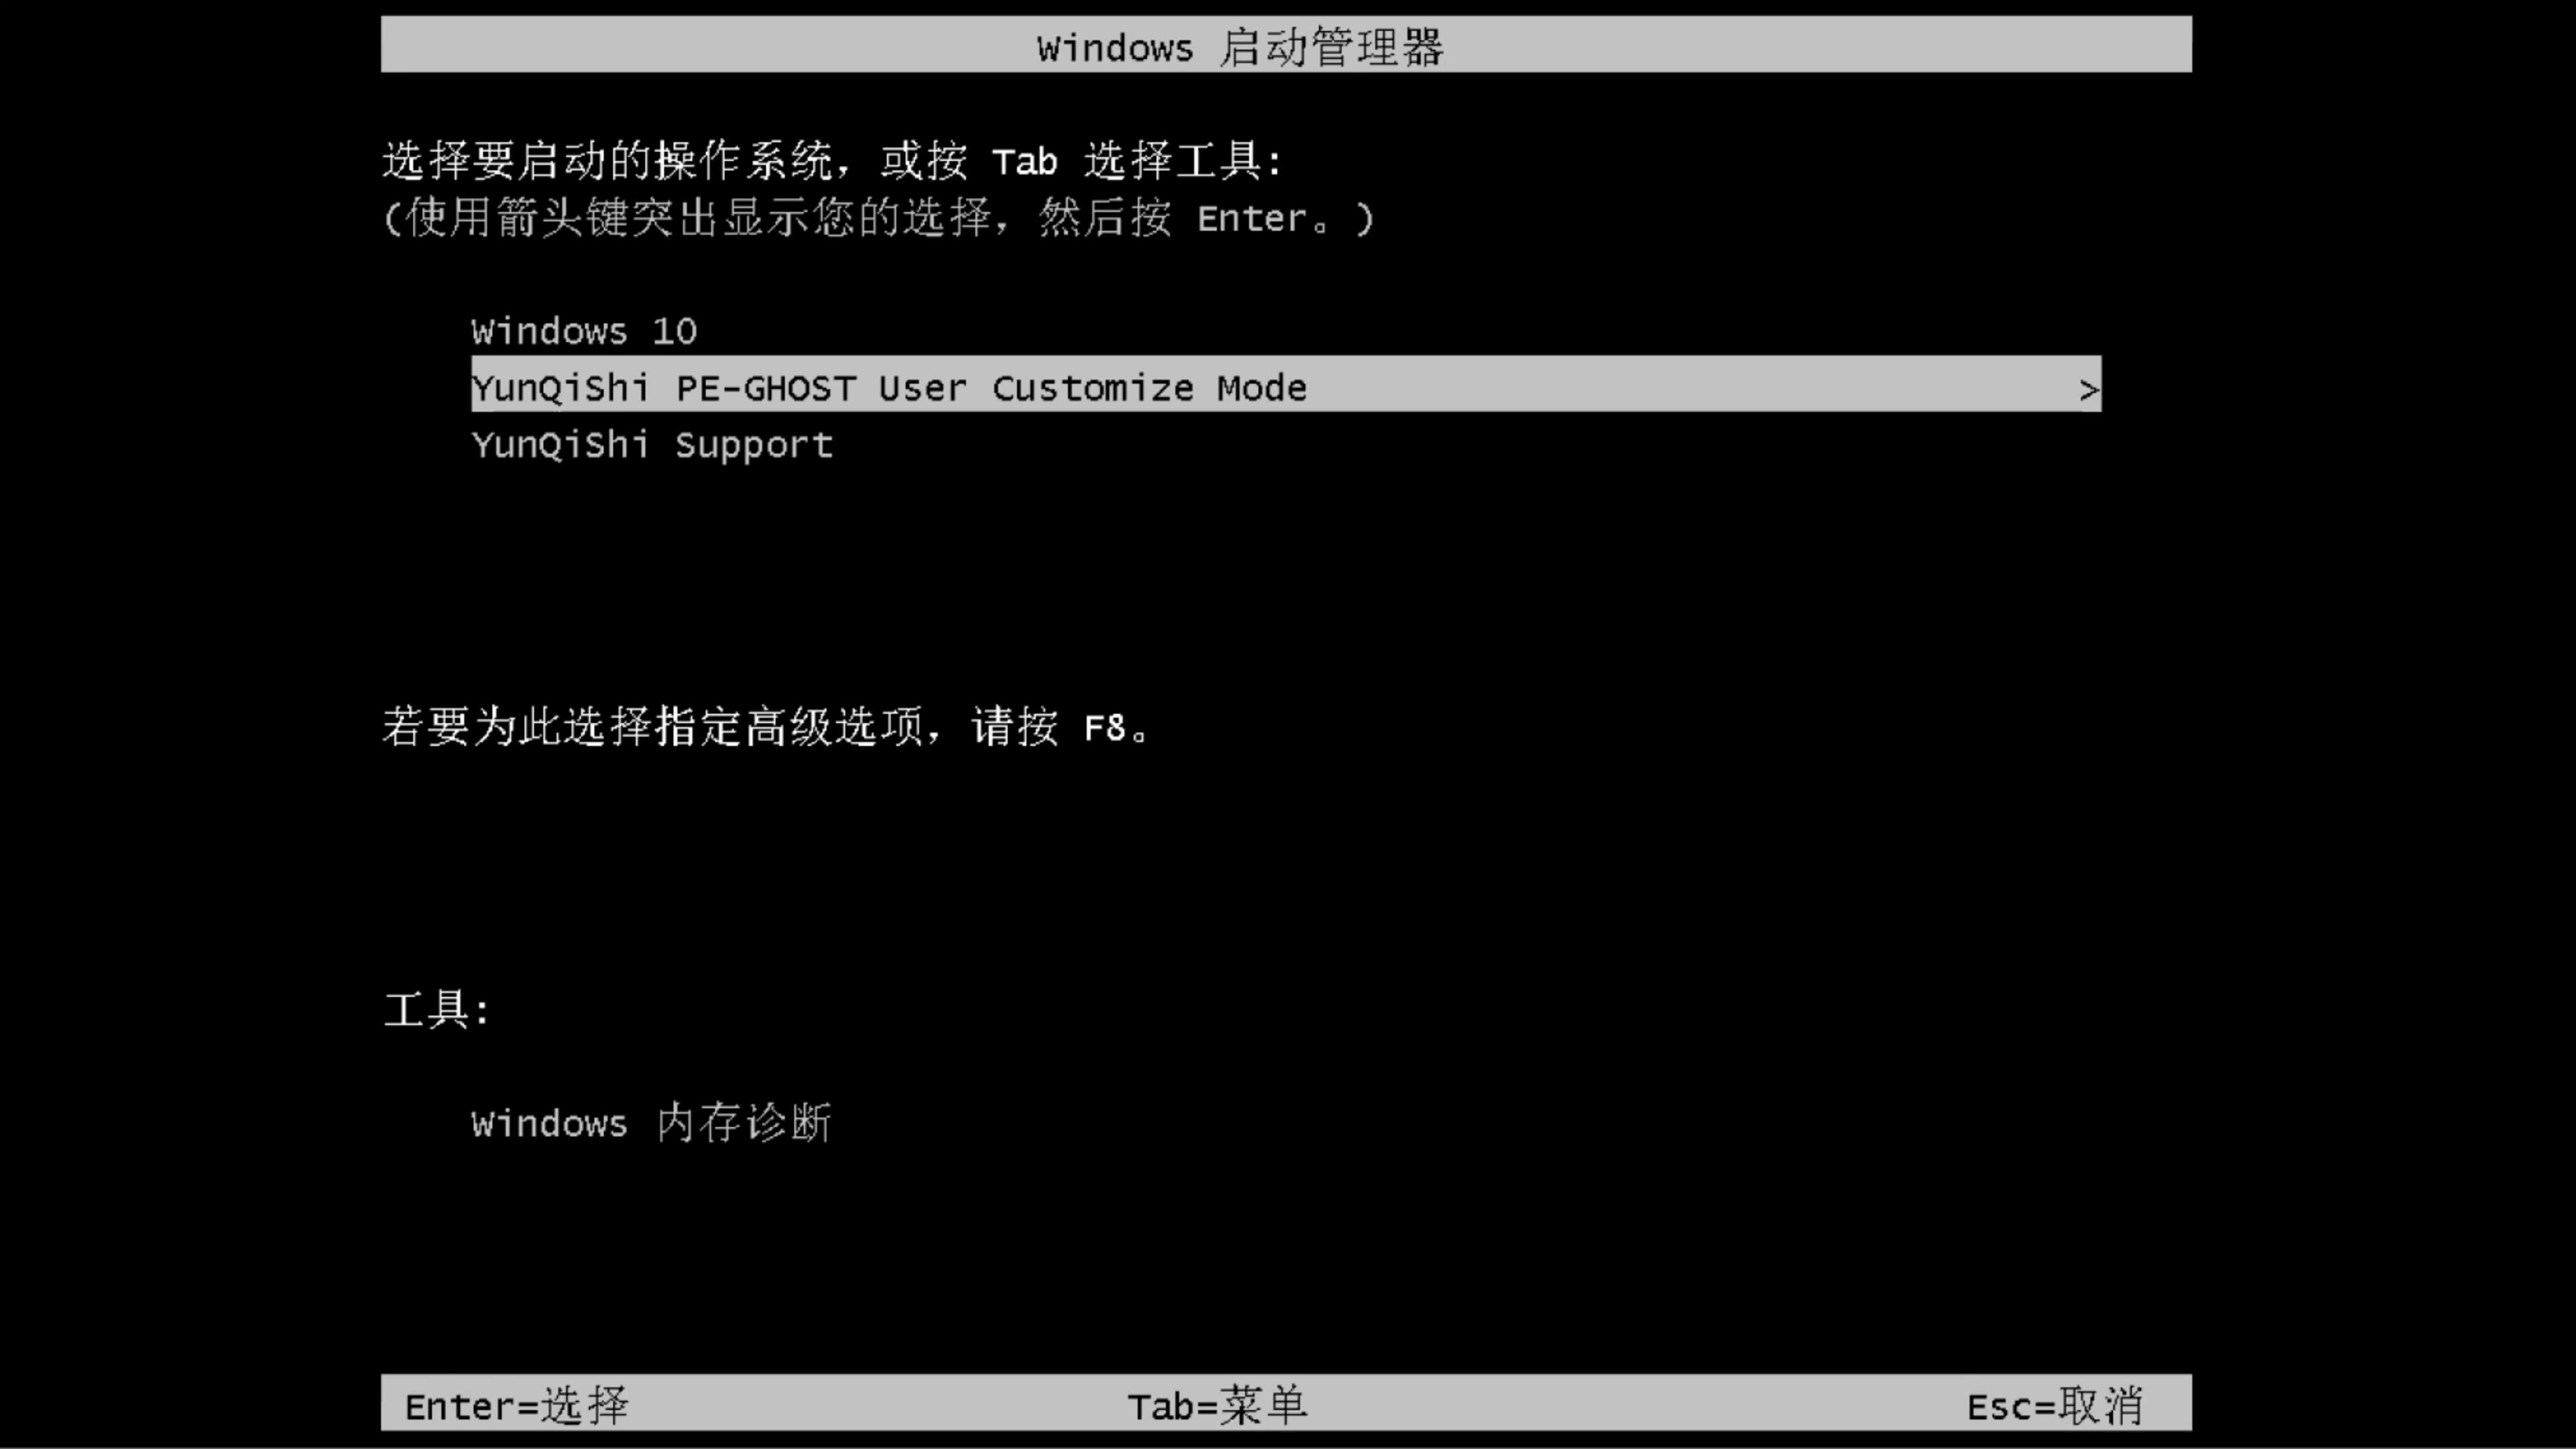 戴尔笔记本专用系统 Ghost windows10 x86 SP1 纯净中文旗舰版系统下载 V2021.01(9)